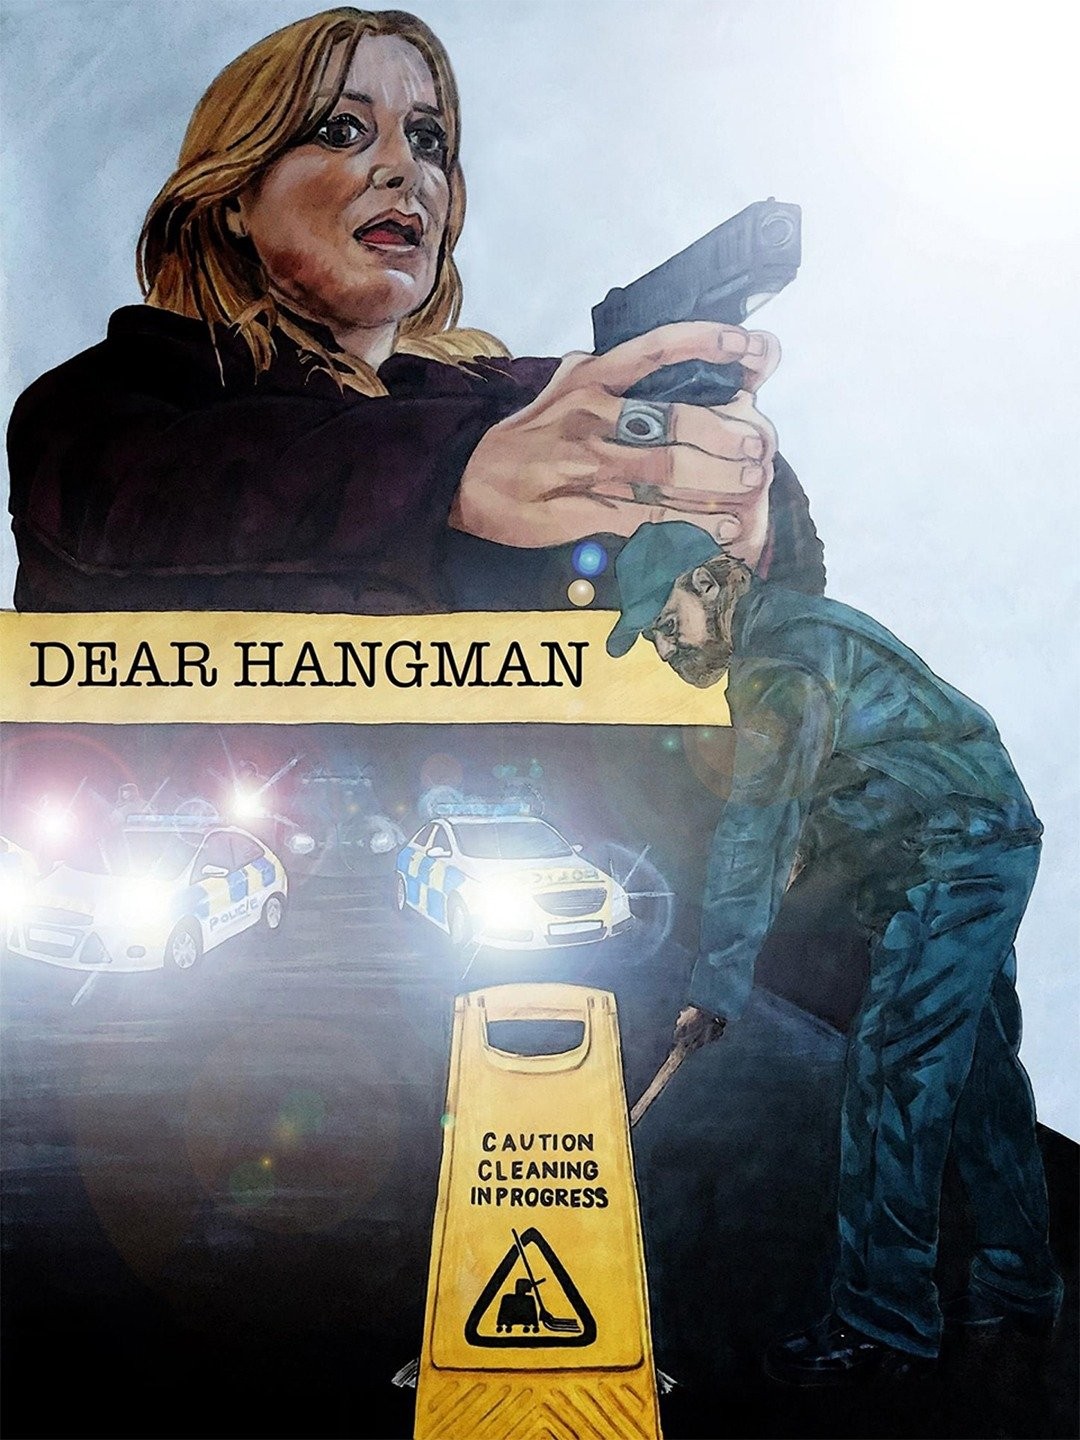 The Hangman (Short 2021) - IMDb